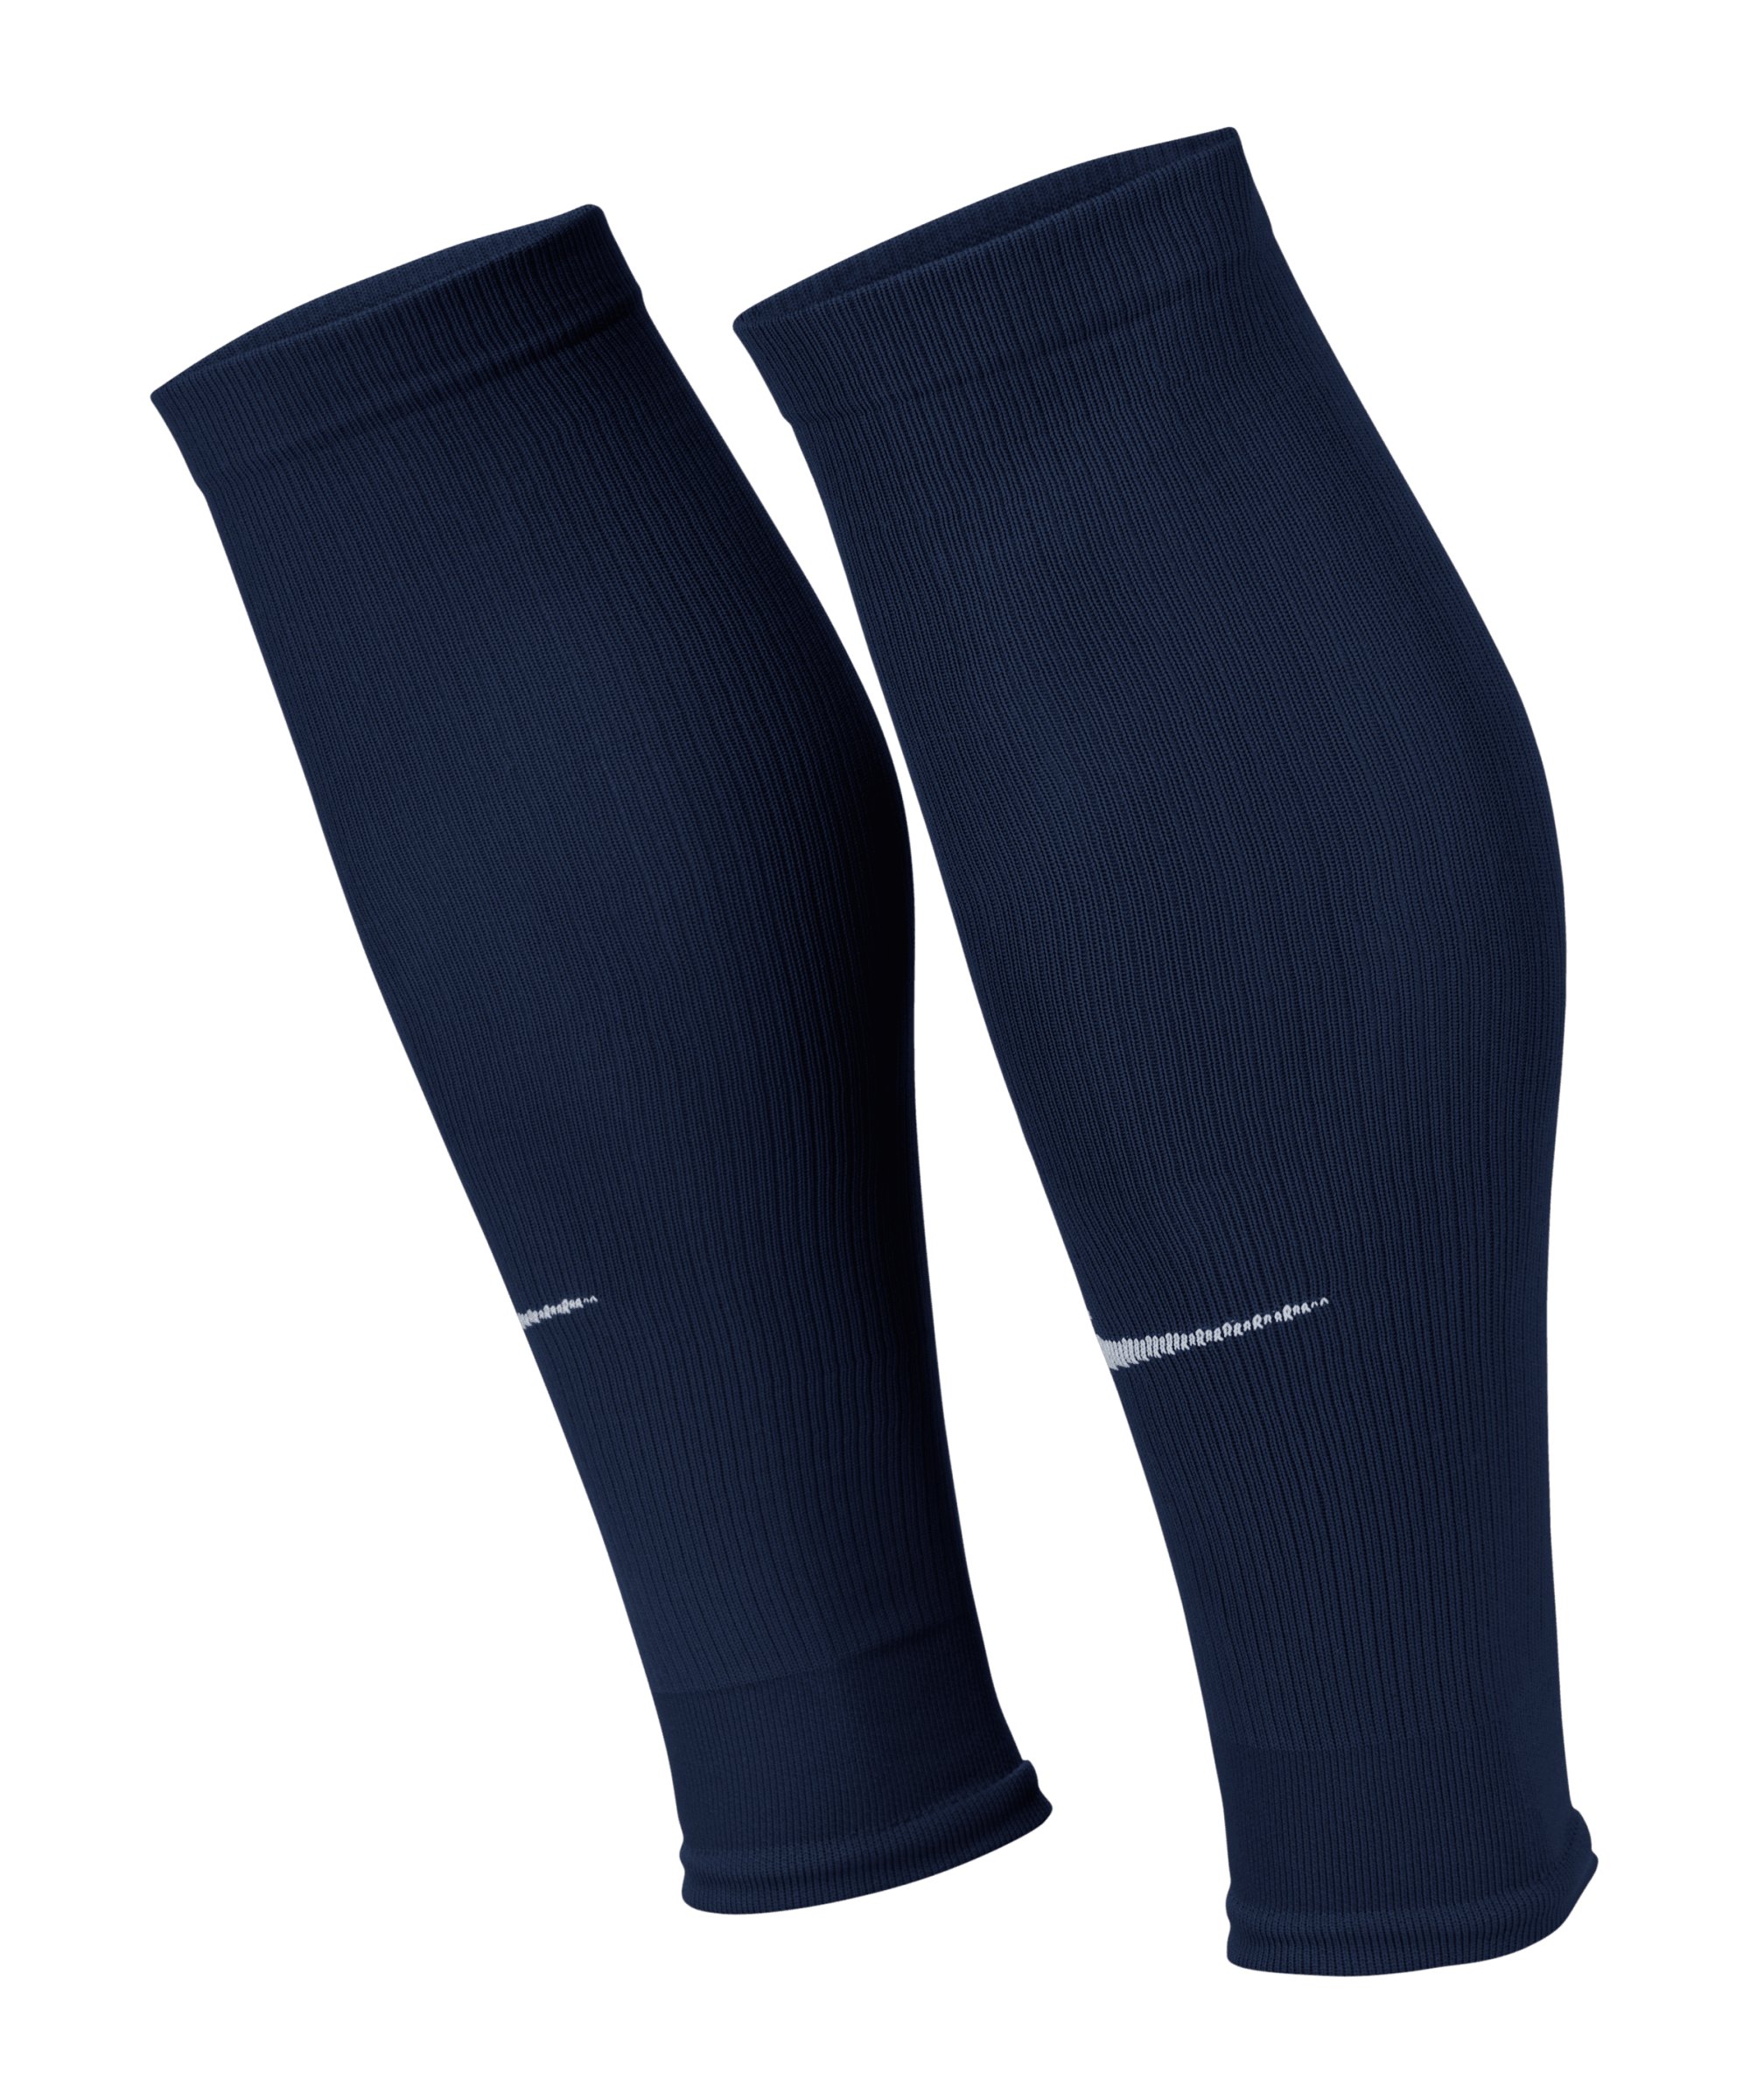 Nike Strike World Cup 22 Sleeve Blau F410 - dunkelblau